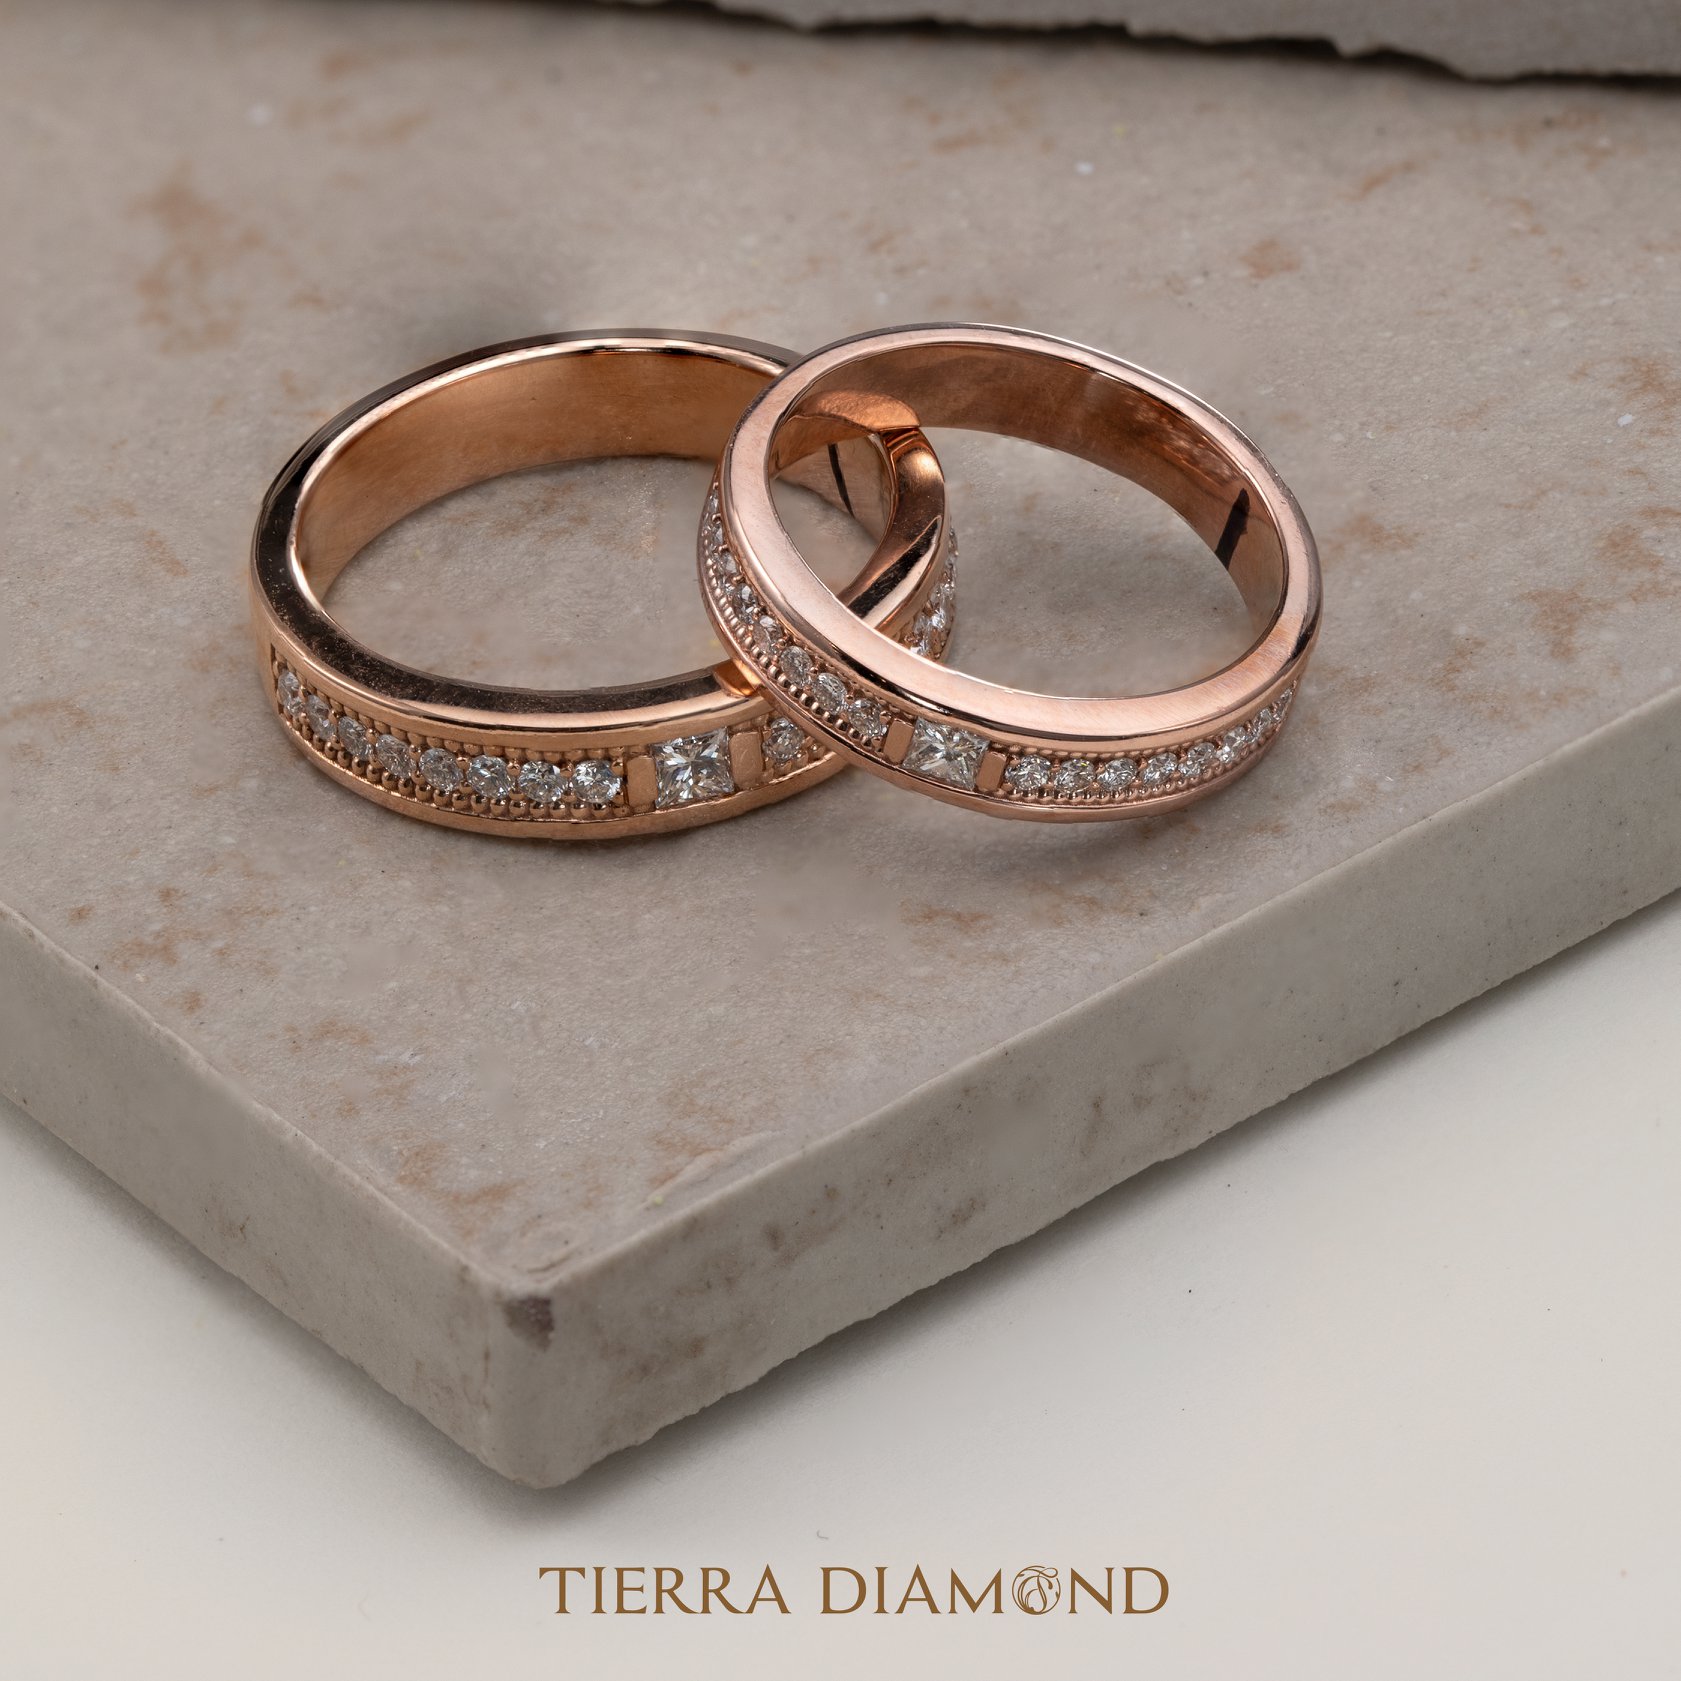 Đeo nhẫn cưới đúng cách thể hiện trọn vẹn tình yêu cùng Tierra Diamond - 4